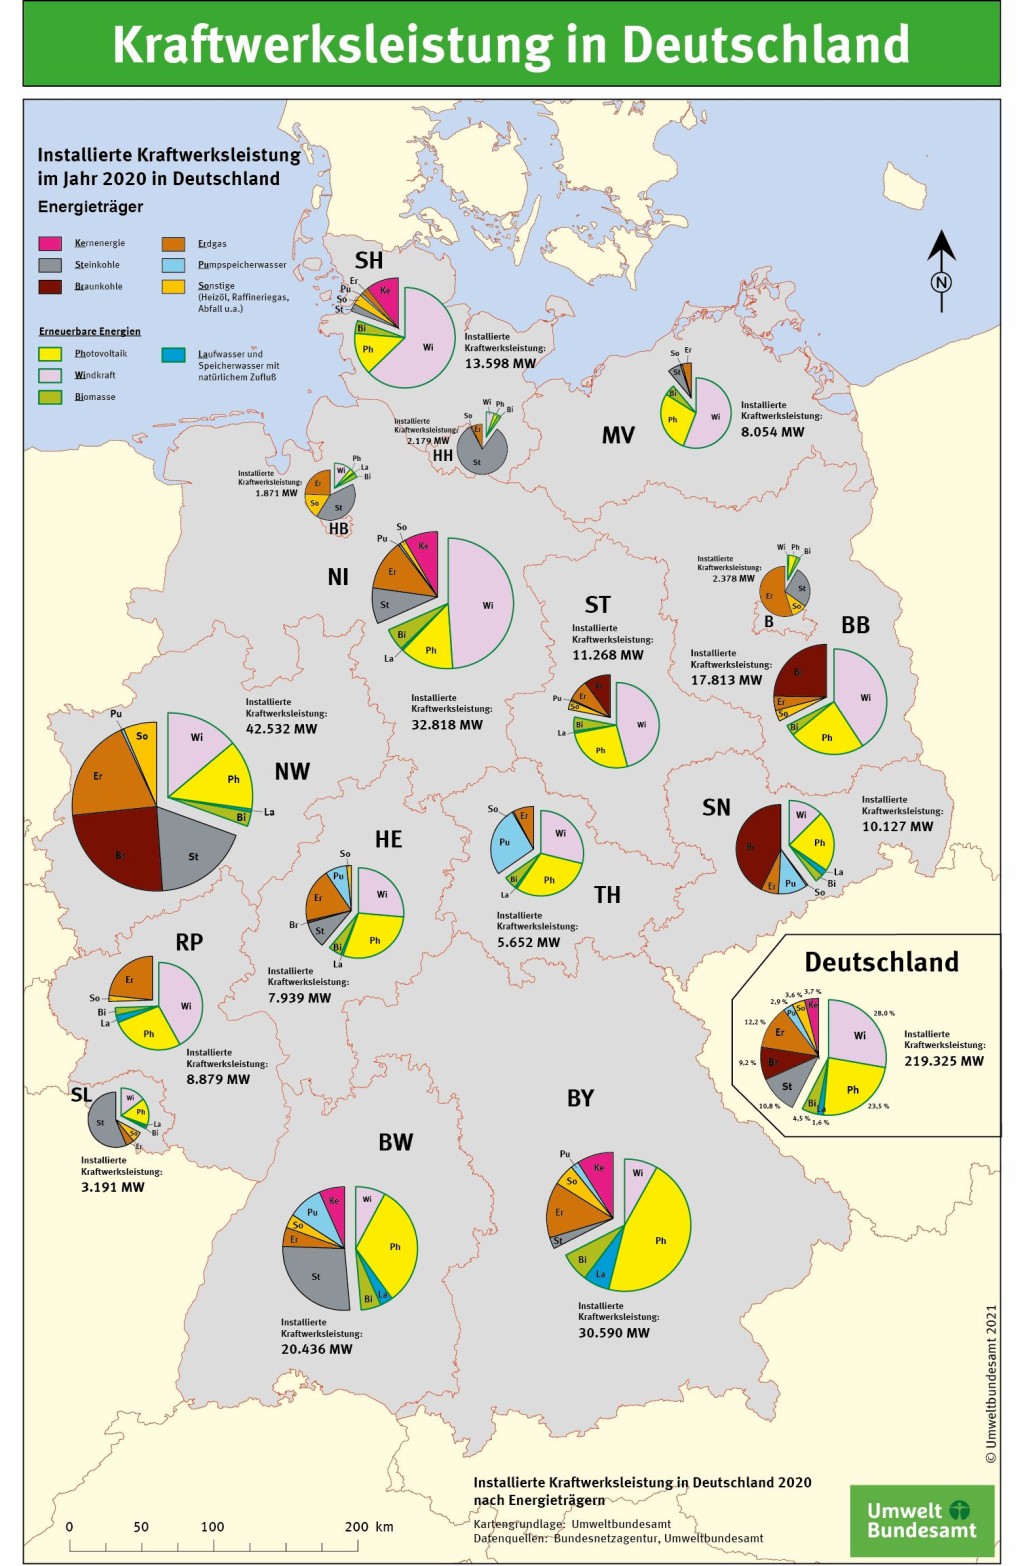 Kraftwerksleistung in Deutschland nach Energieträgern. Grafik: Umweltbundesamt